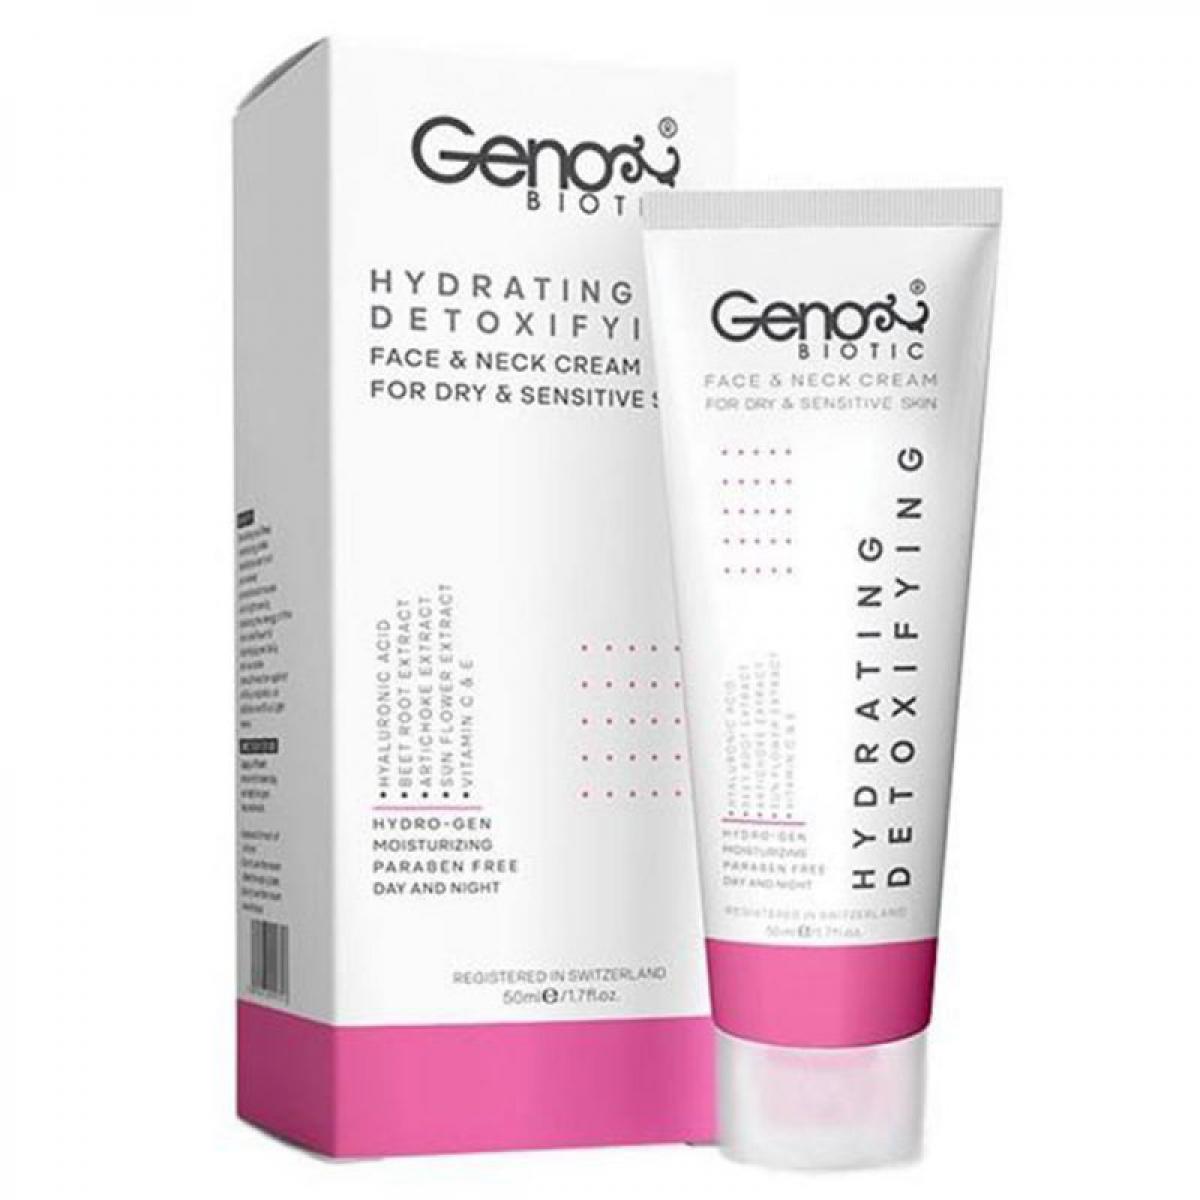 کرم مرطوب کننده صورت و گردن مناسب پوست خشک و حساس - Hydrating Detoxifying Dry And Sensitive Skin Face And Neck Cream 50 ml